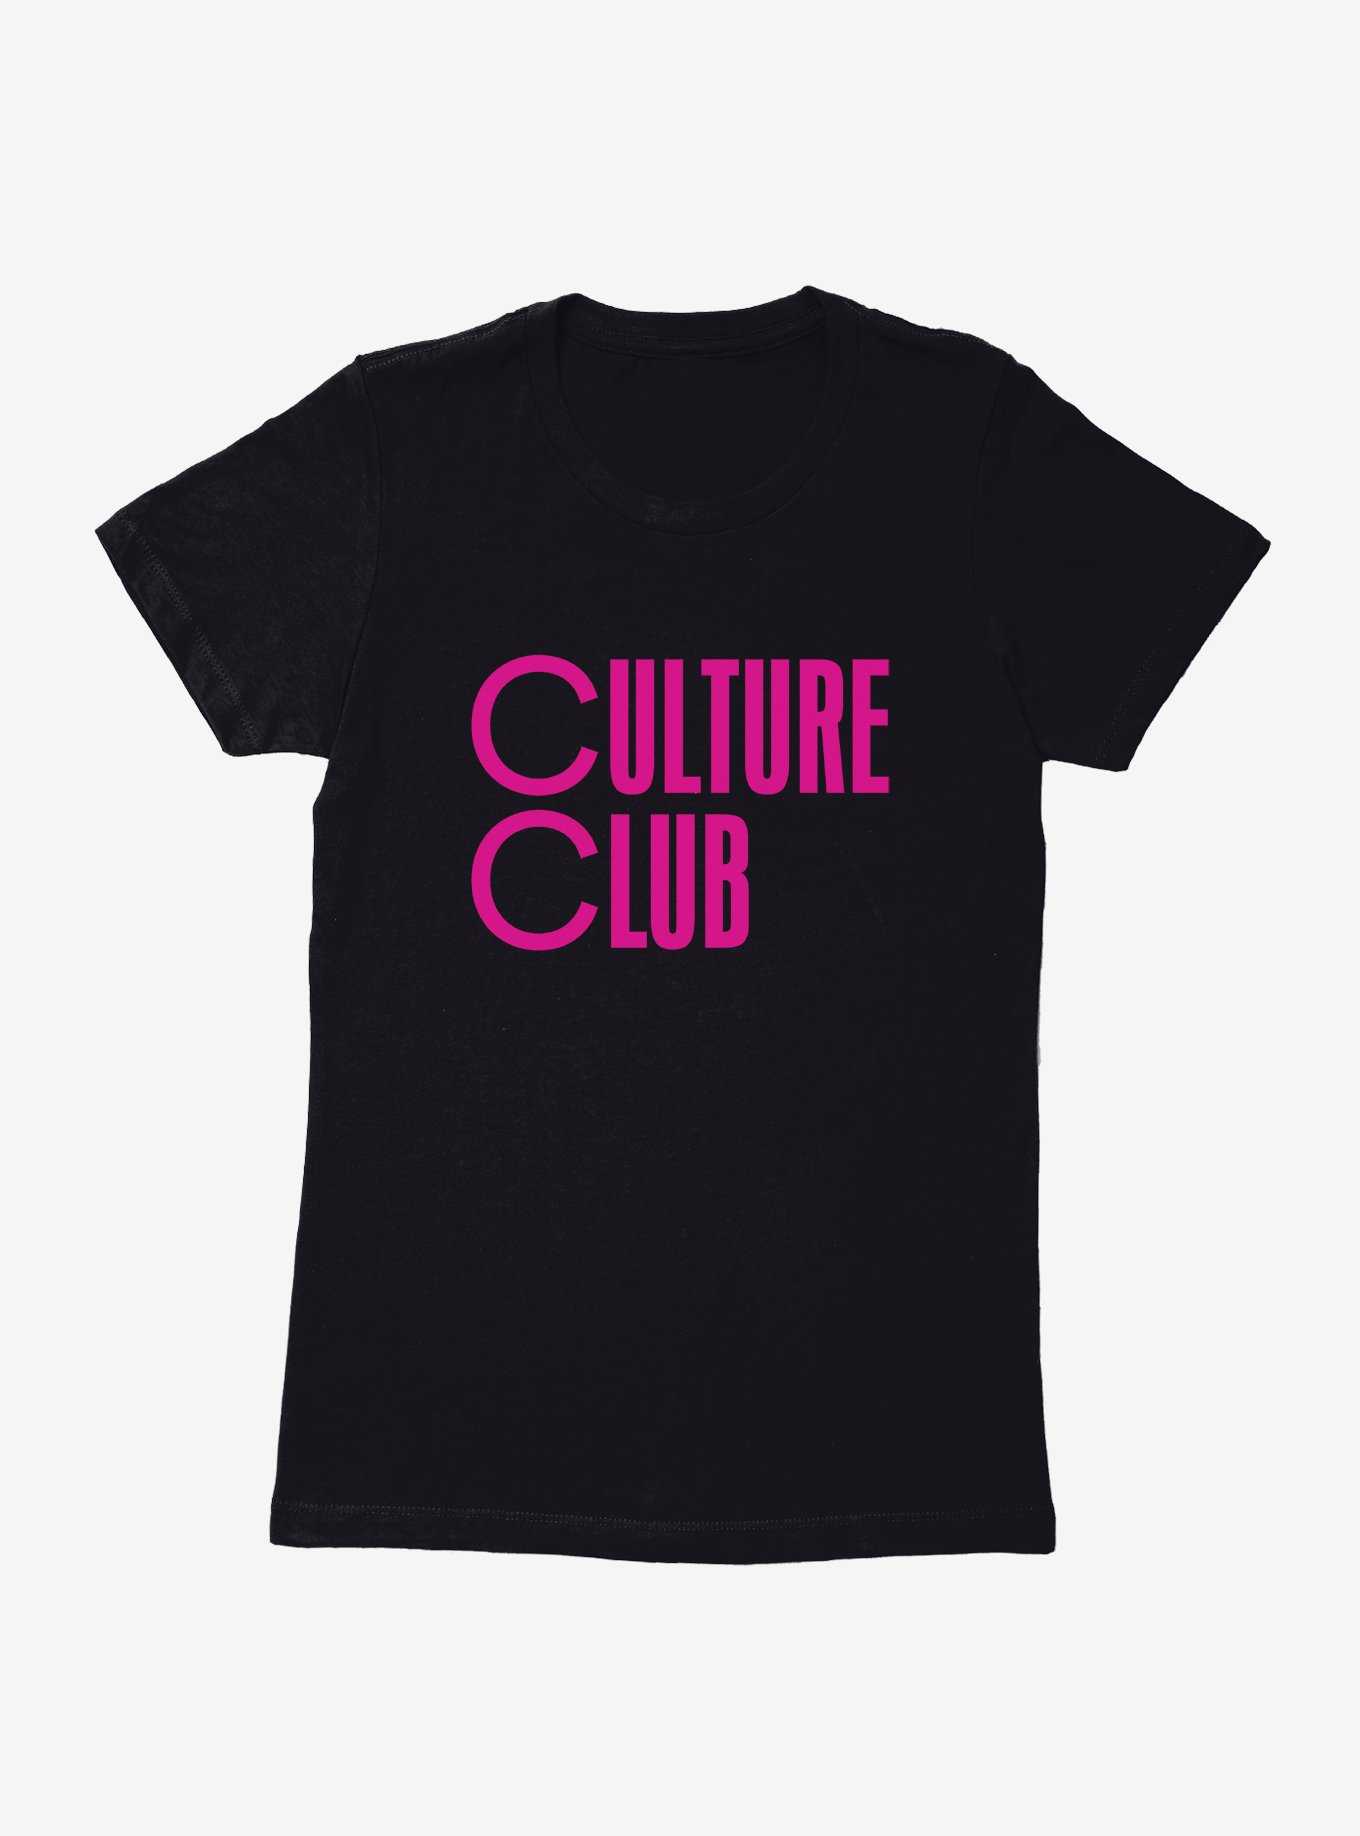 Boy George & Culture Club Culture Club Font Womens T-Shirt, , hi-res